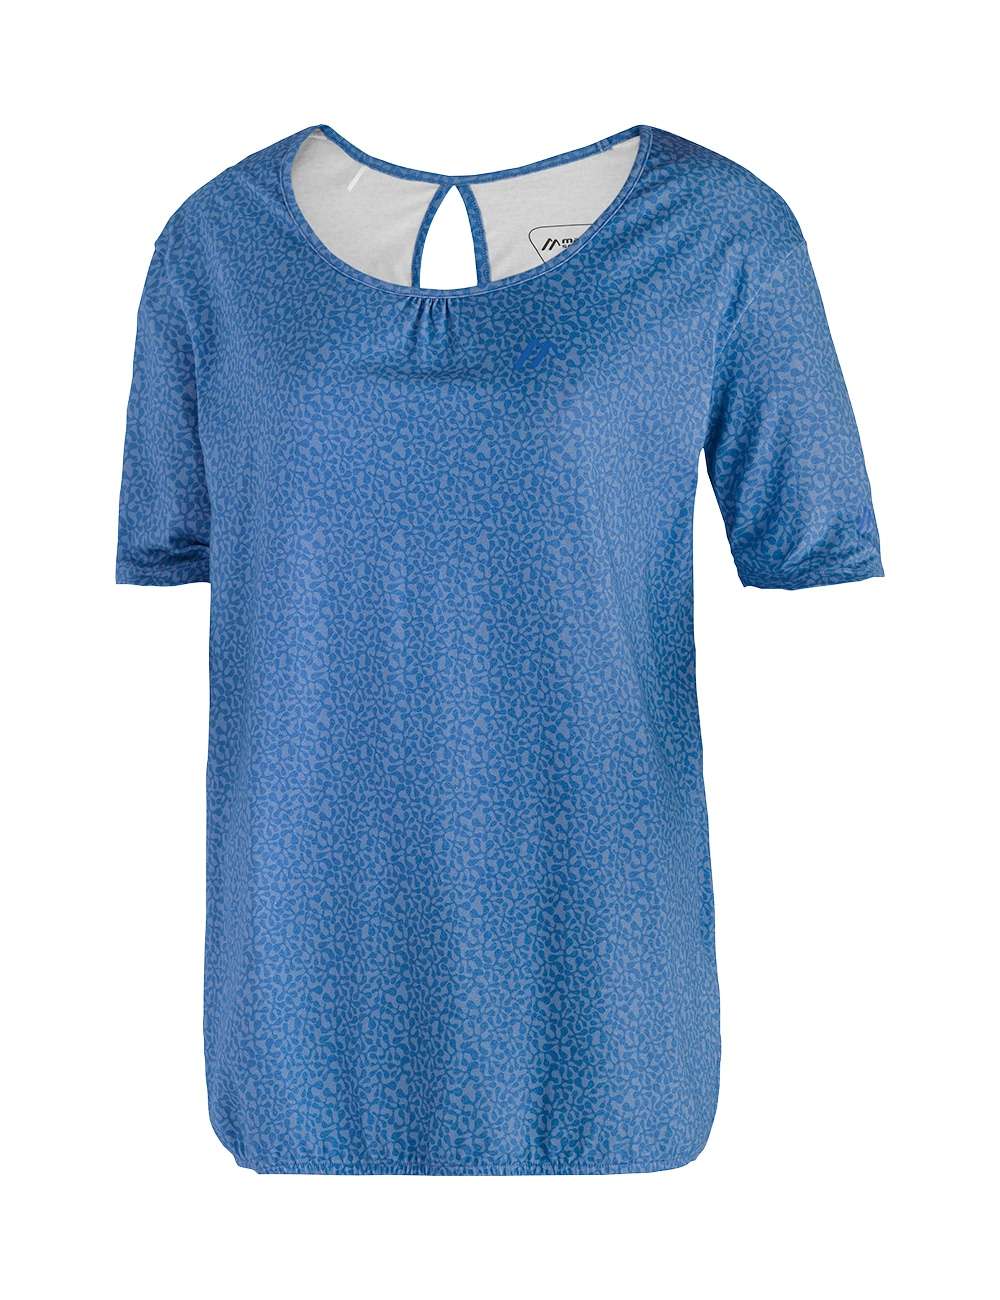 Футболка, женская функциональная рубашка, дышащая рубашка для отдыха.